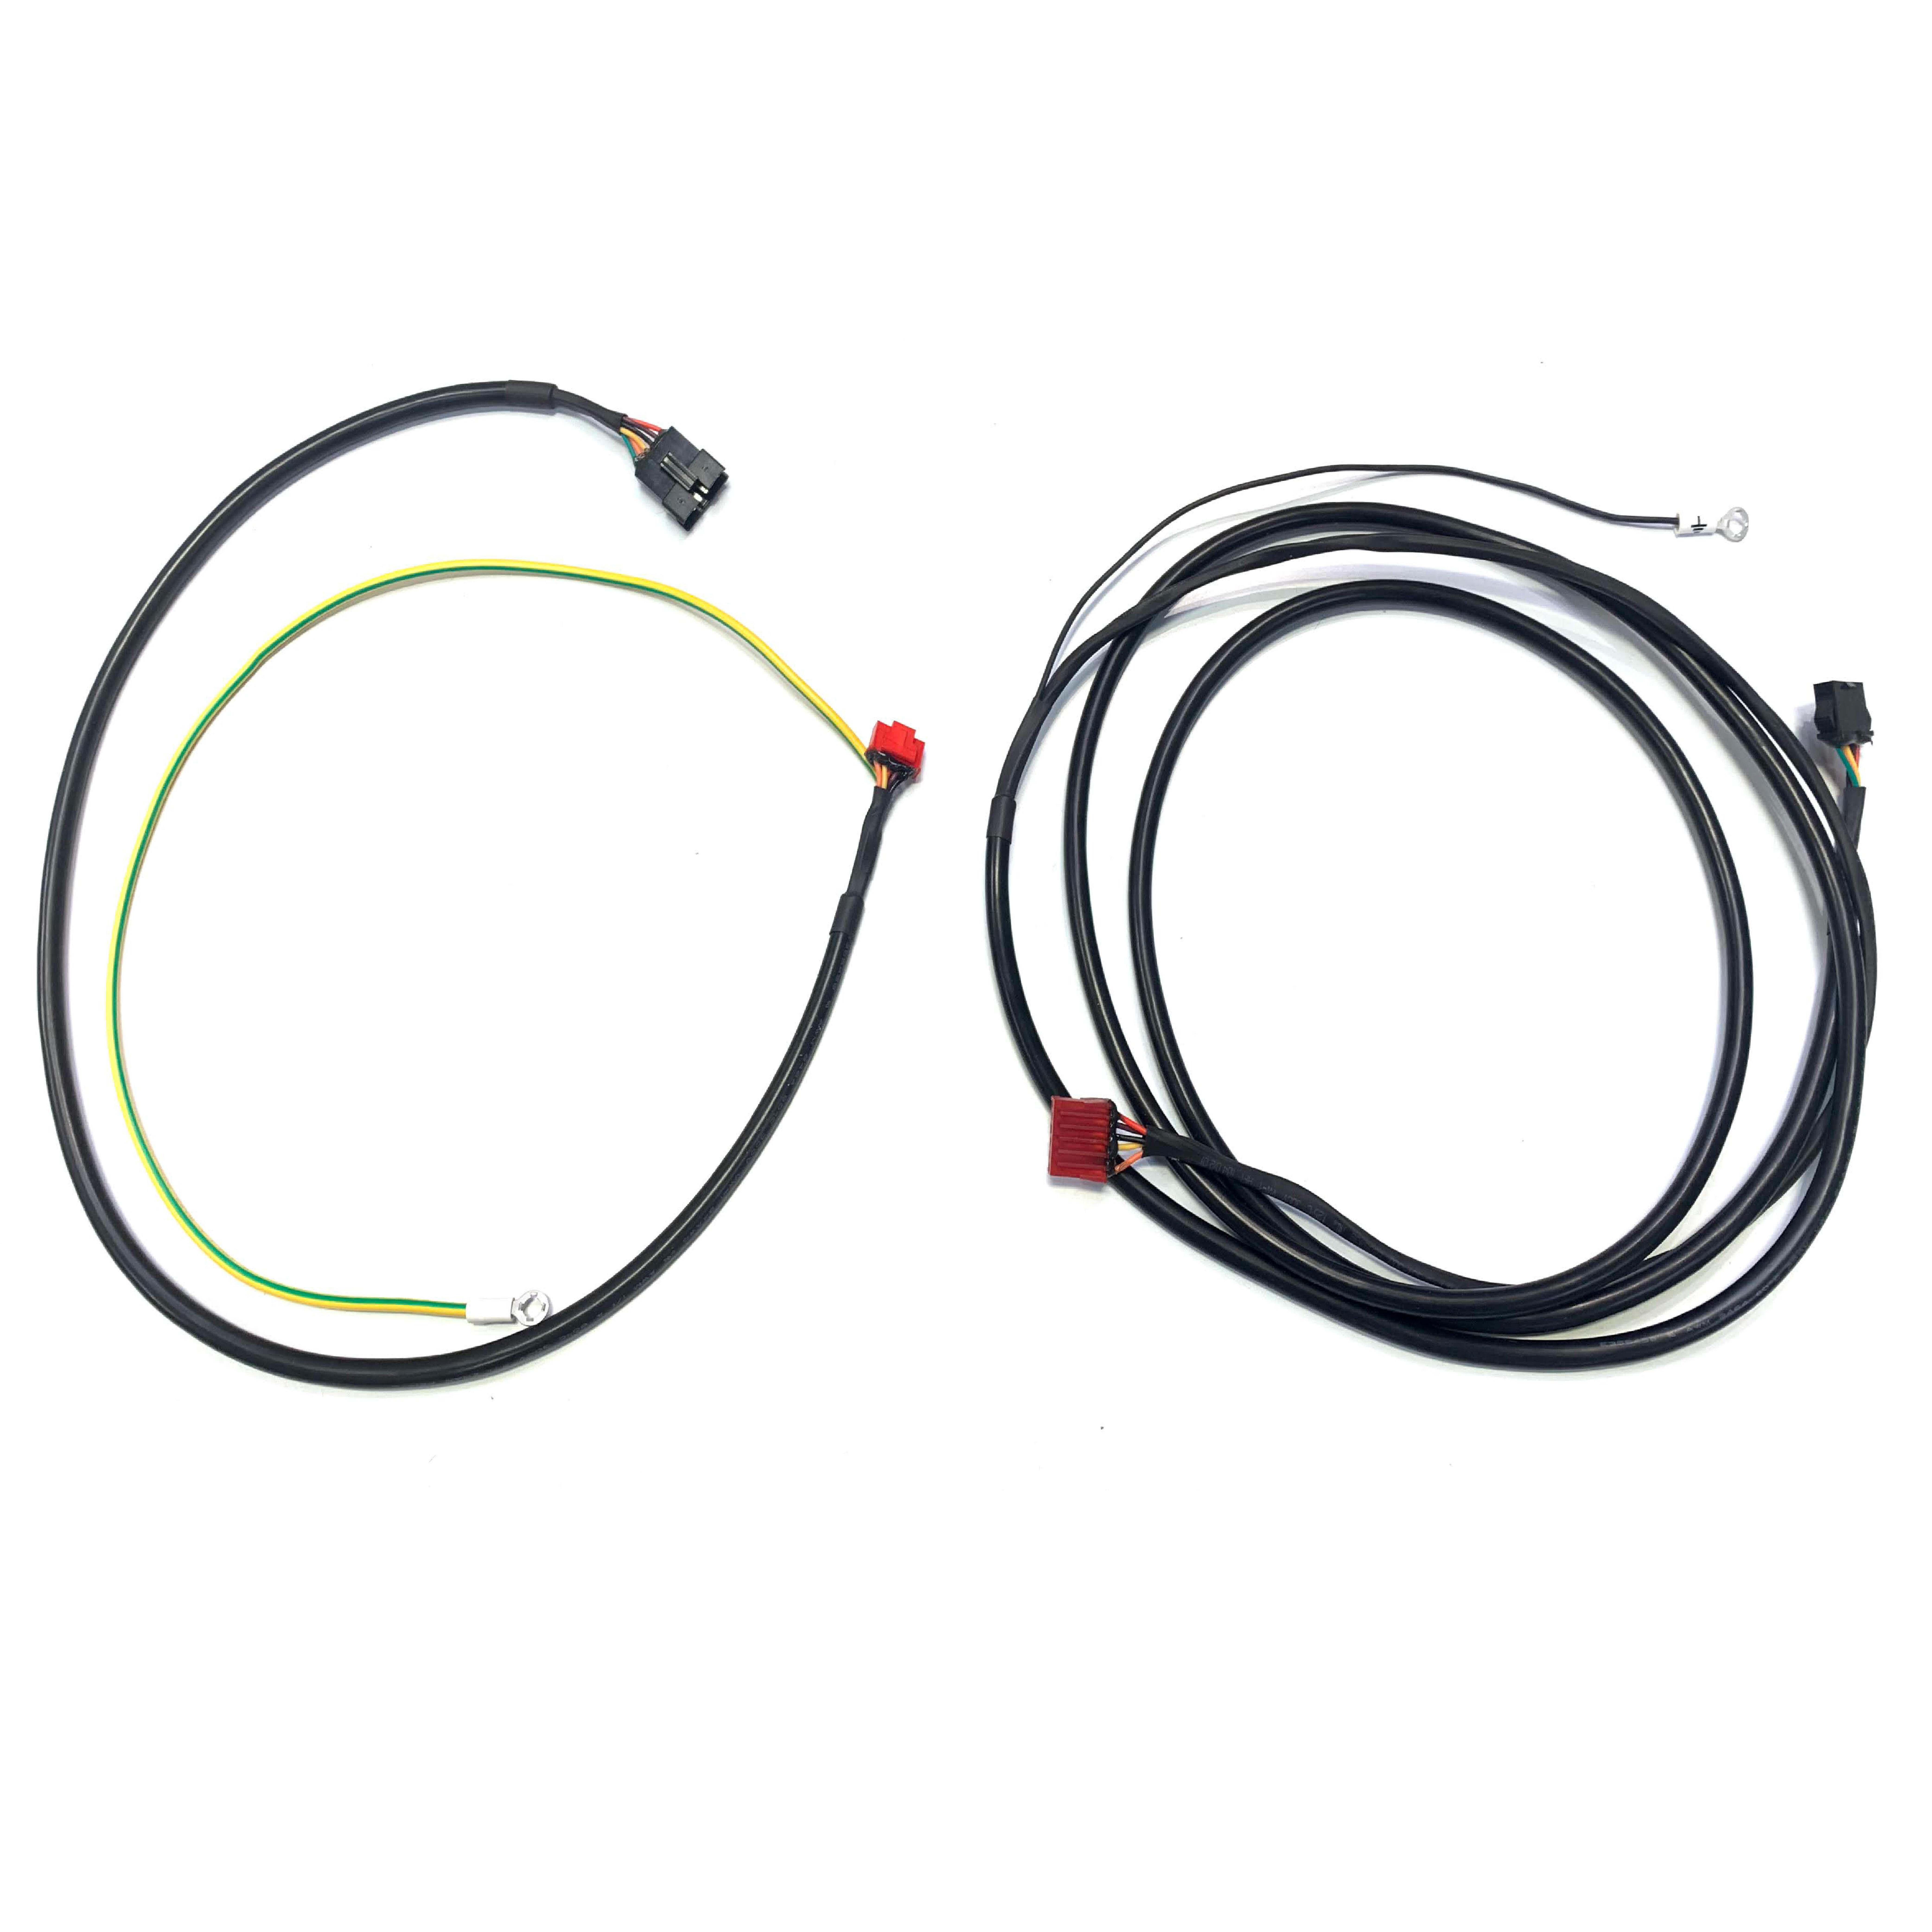 Cablu consolă RUN100E A și B La Oferta Online decathlon imagine La Oferta Online